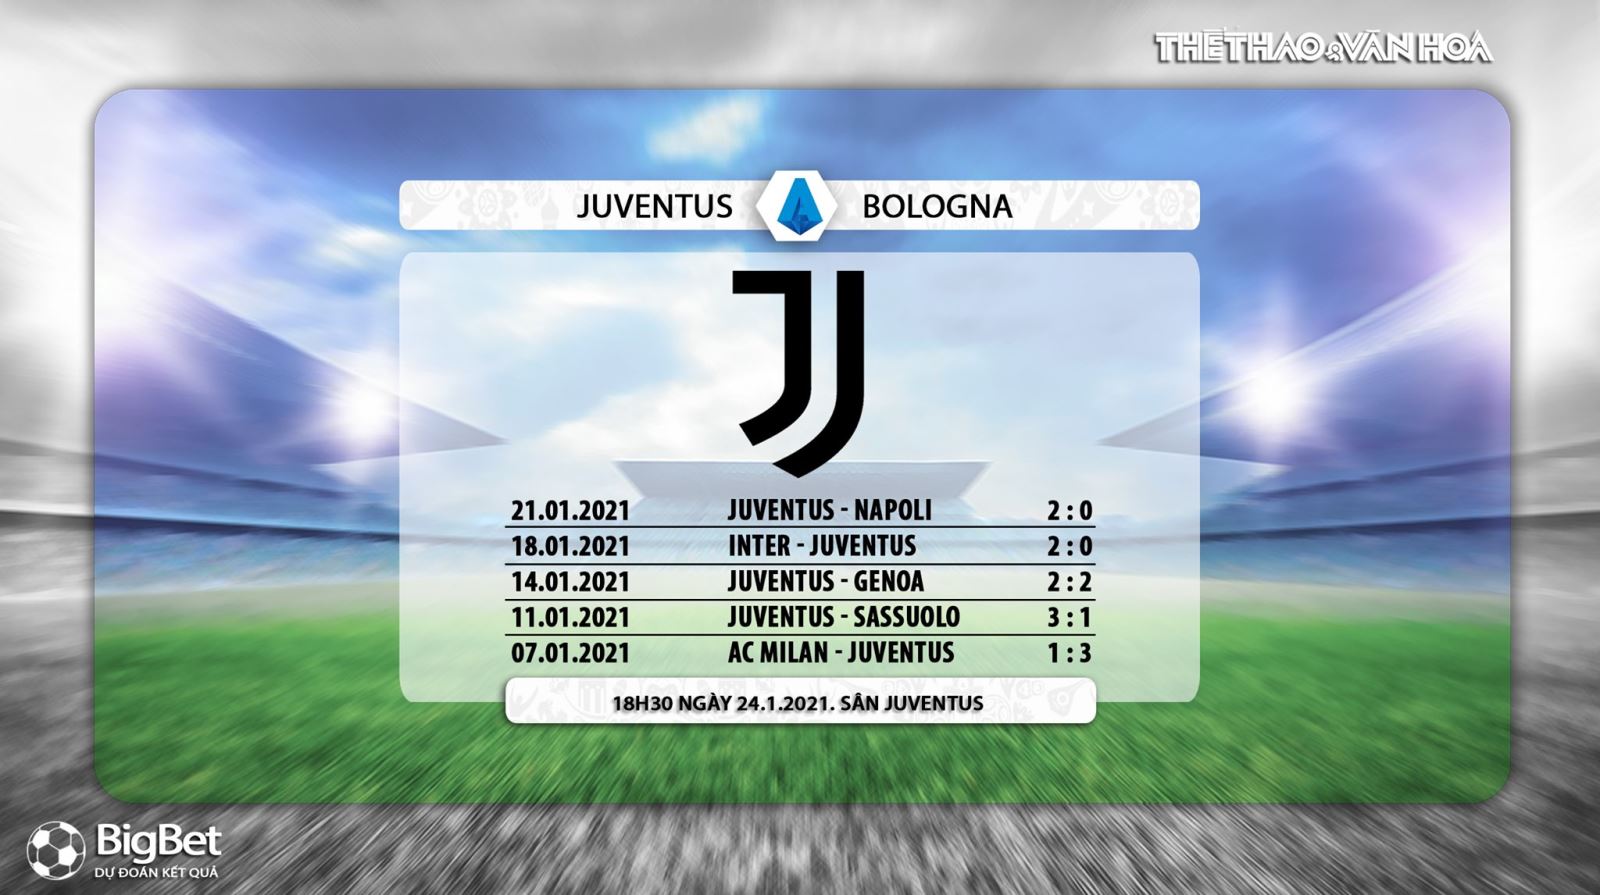 FPT Play trực tiếp bóng đá Ý hôm nay: Juventus vs Bologna. Xem trực tiếp Juve